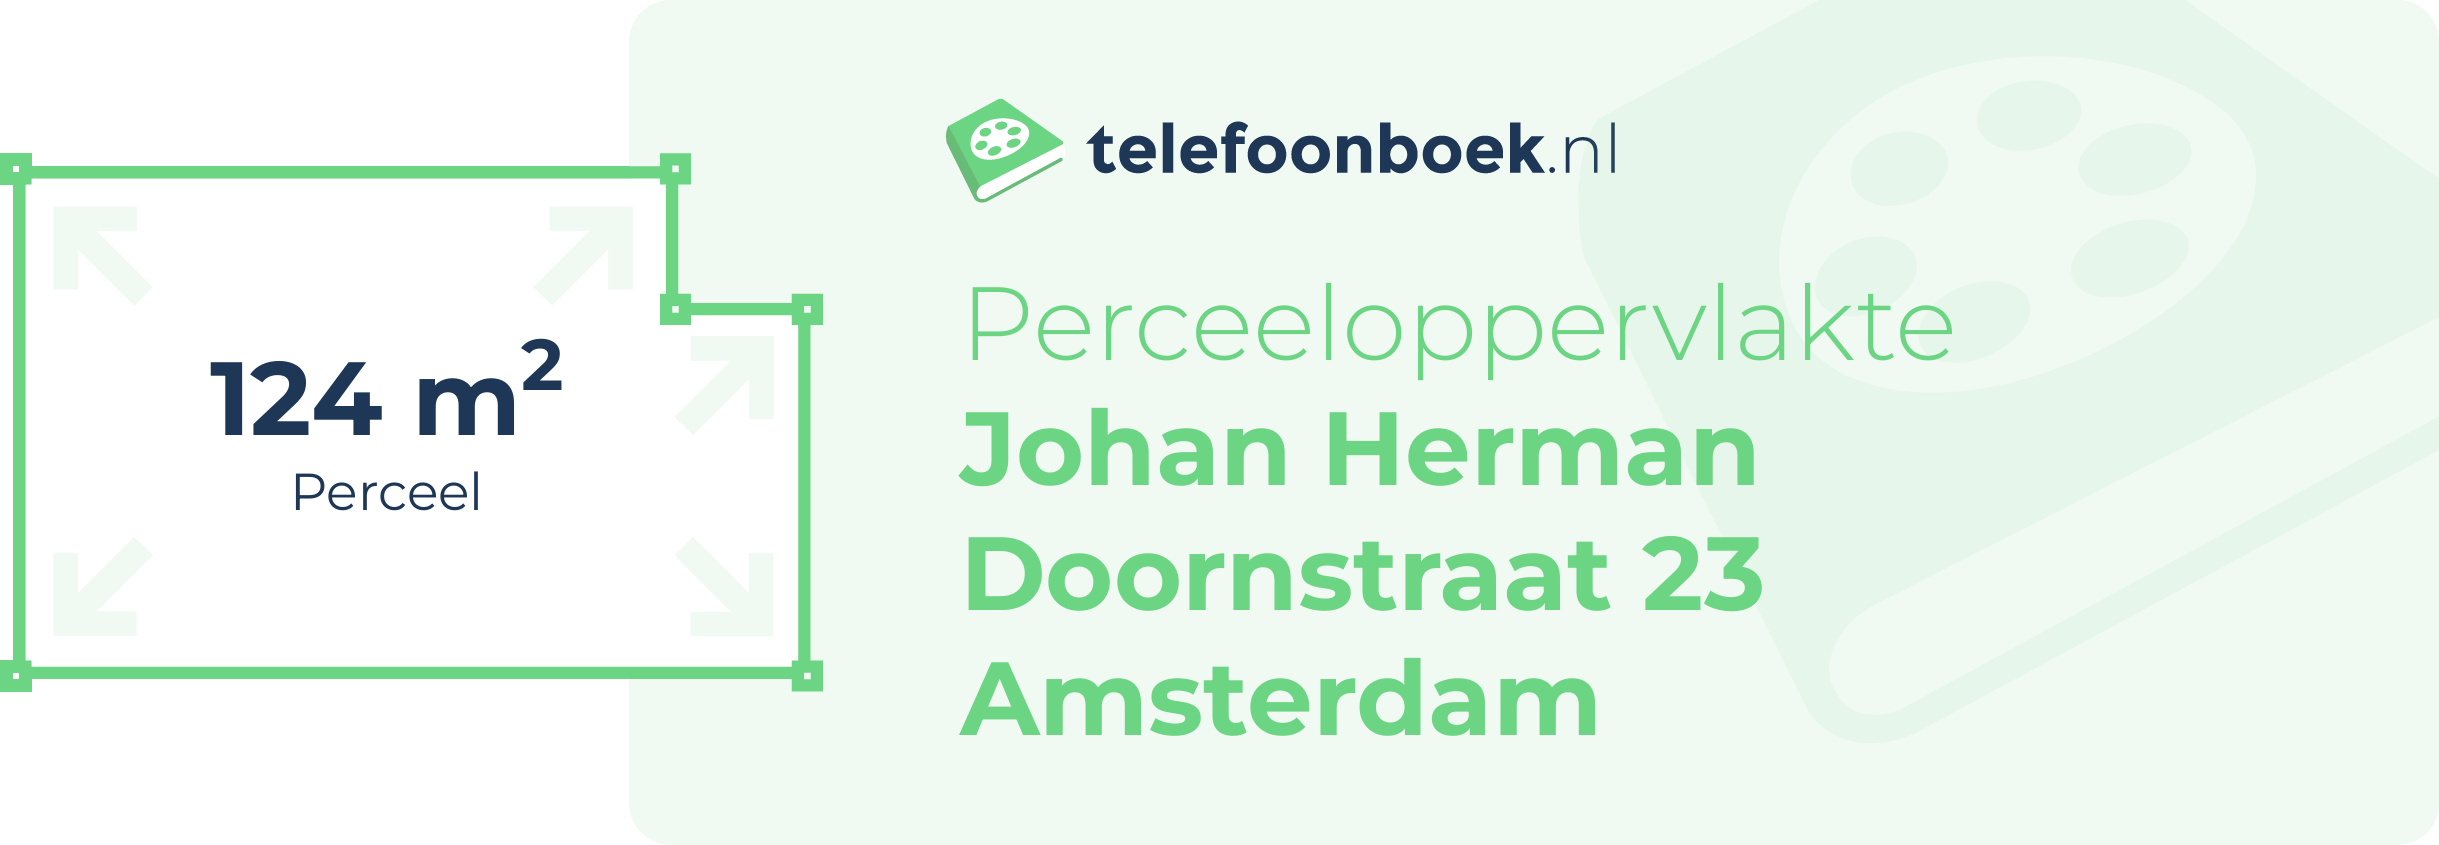 Perceeloppervlakte Johan Herman Doornstraat 23 Amsterdam